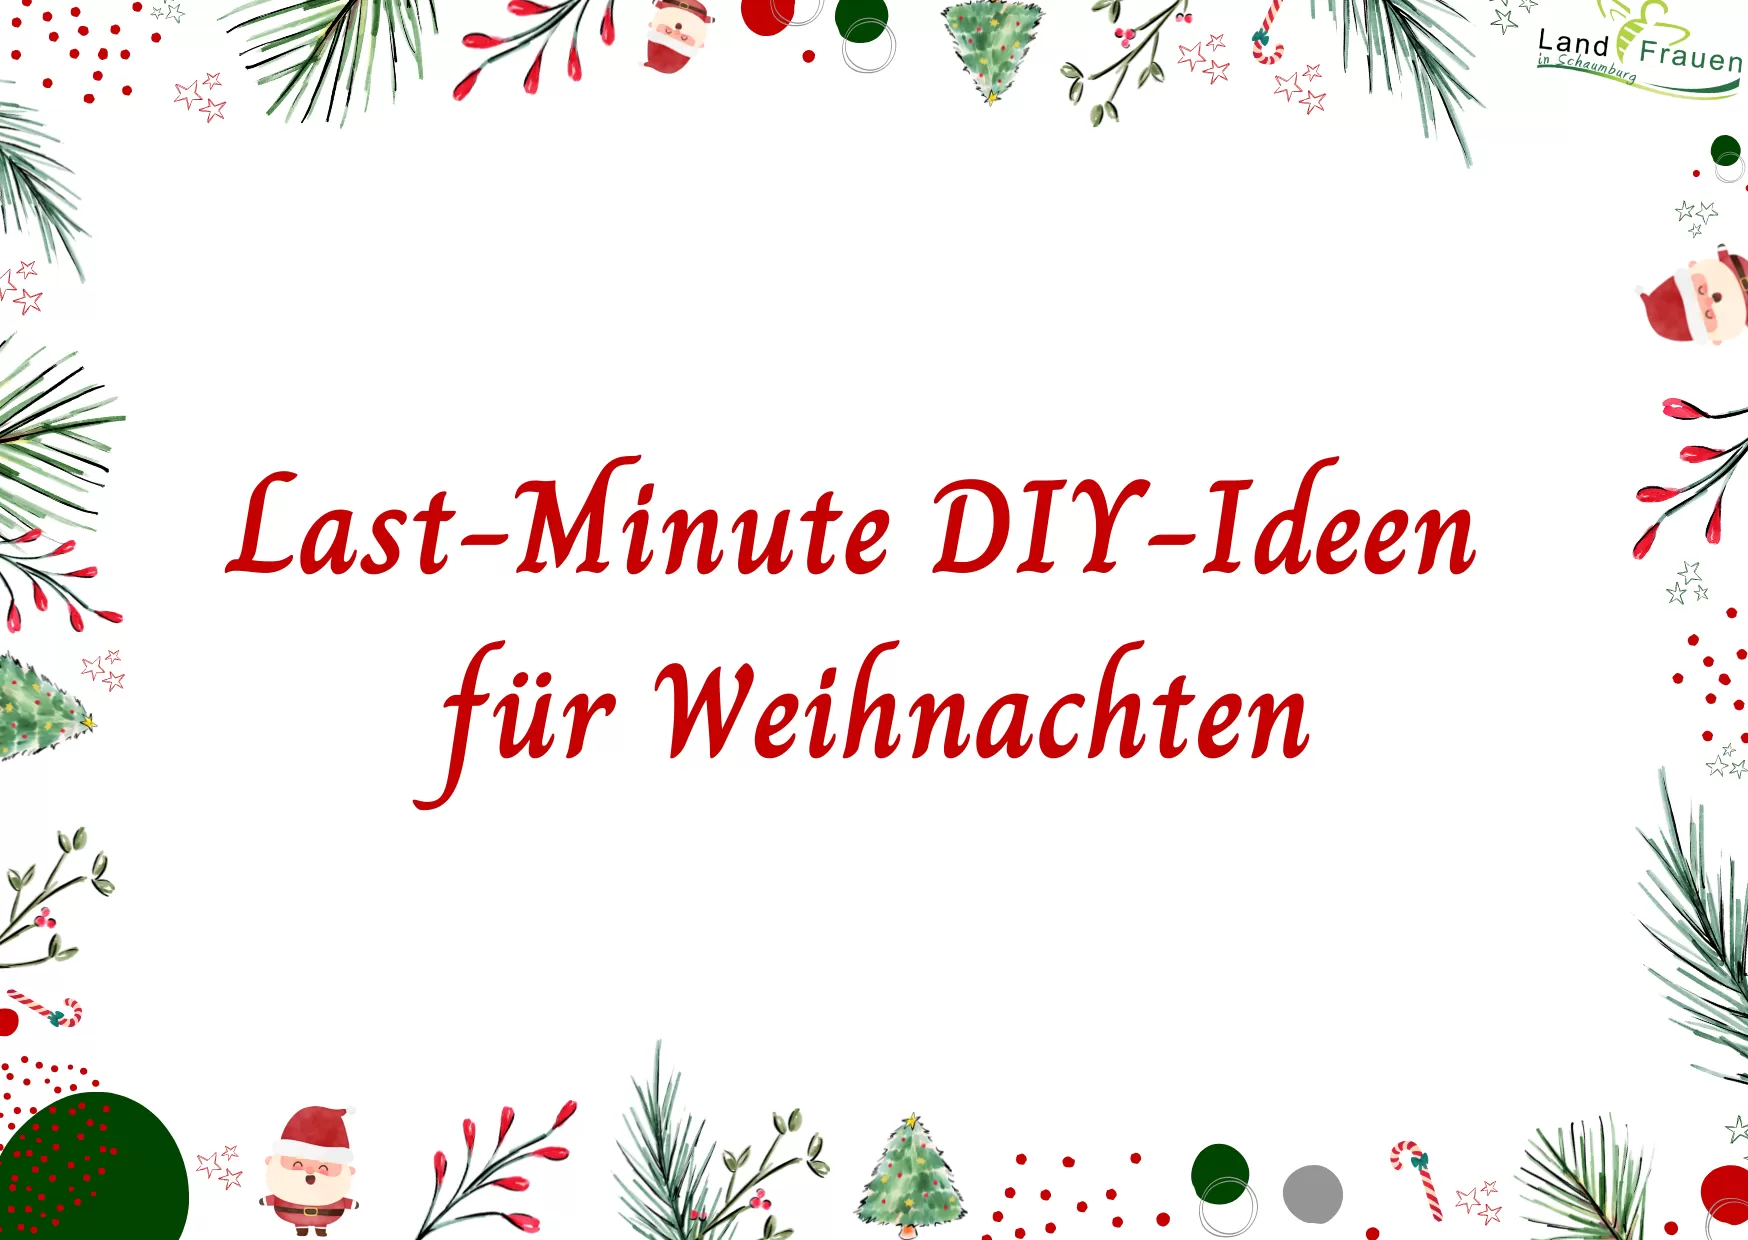 Last-Minute DIY-Ideen für Weihnachten